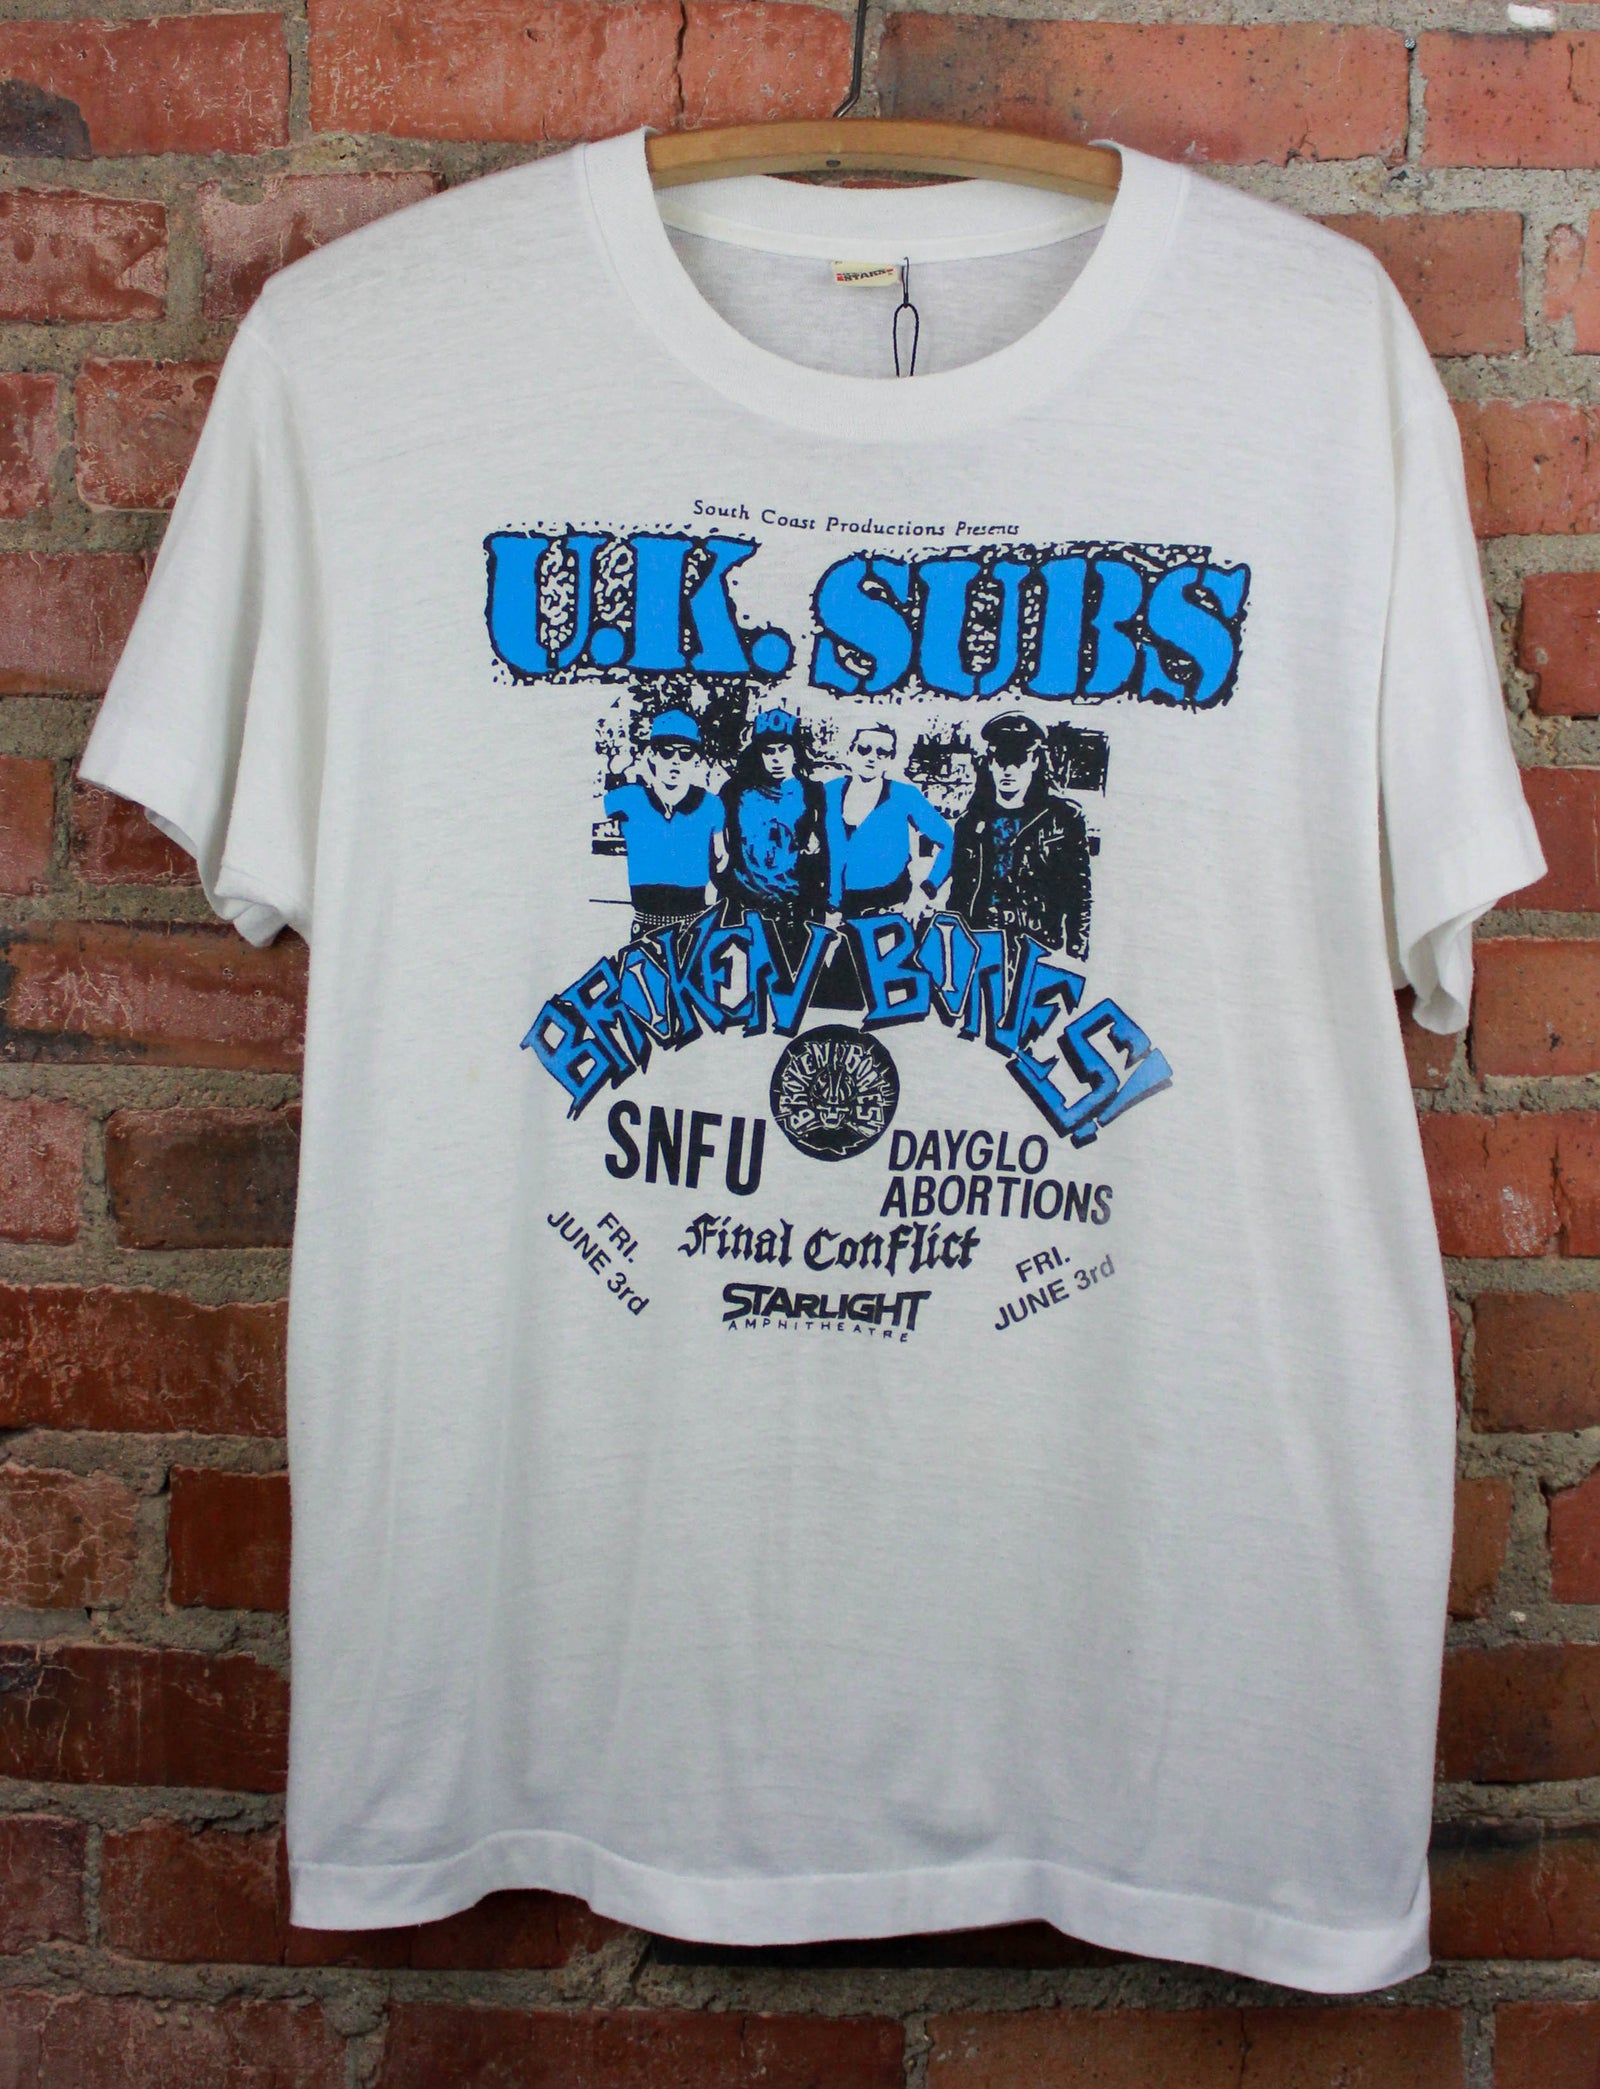 Vintage 80's UK Subs Concert T Shirt Broken Bones Rock Event Whit – Black Shag Vintage